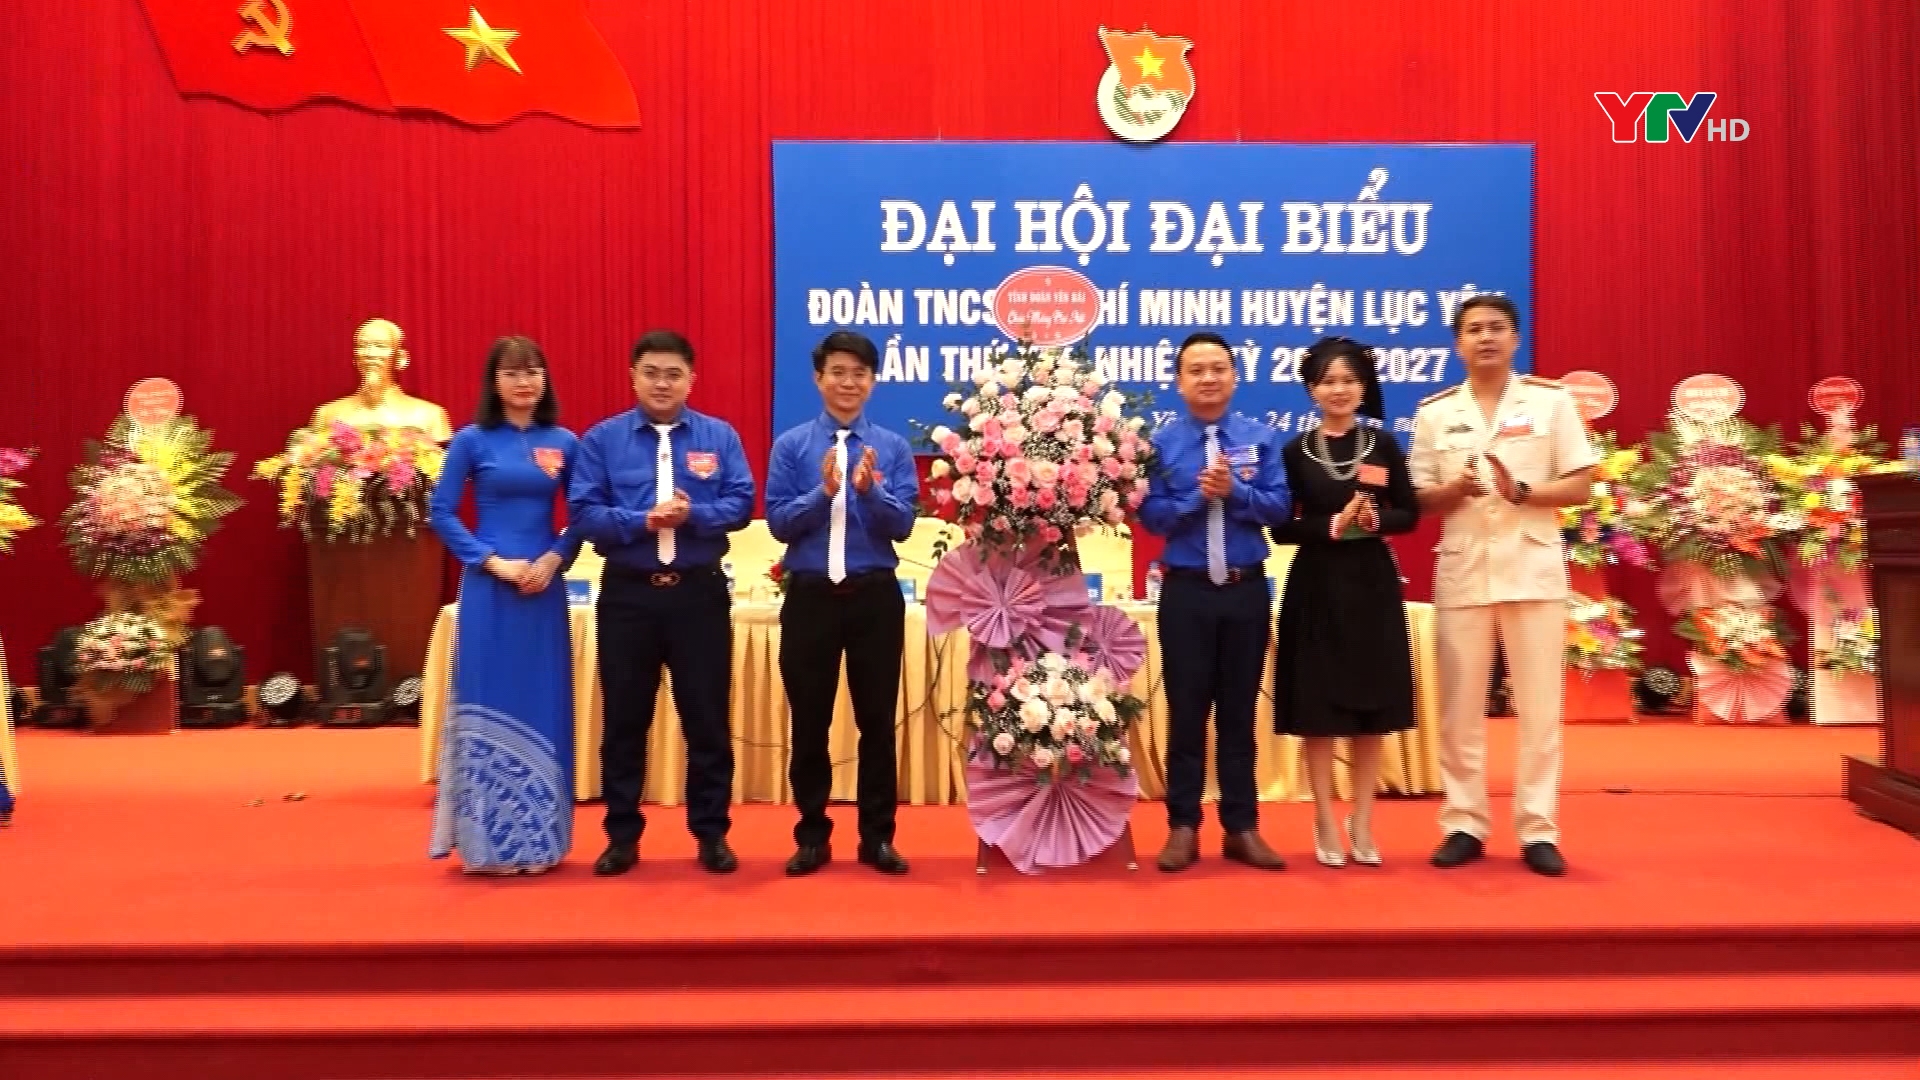 Huyện đoàn Lục Yên và Mù Cang Chải tổ chức thành công Đại hội đại biểu nhiệm kỳ 2022 – 2027